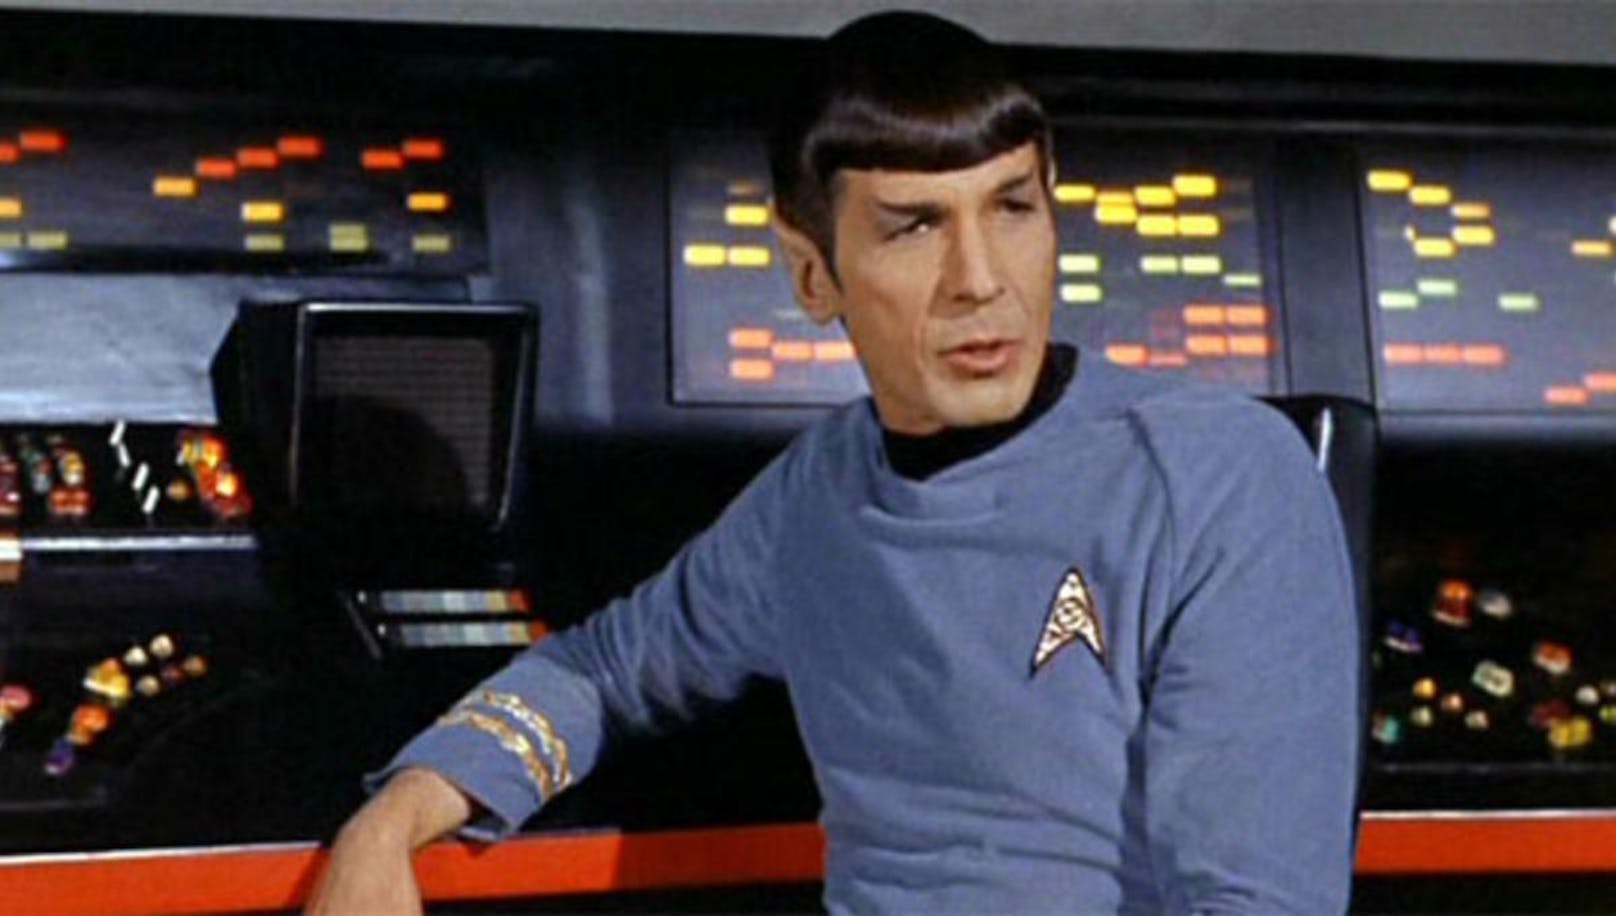 Oder aber Mr. Spock aus "Star Trek".